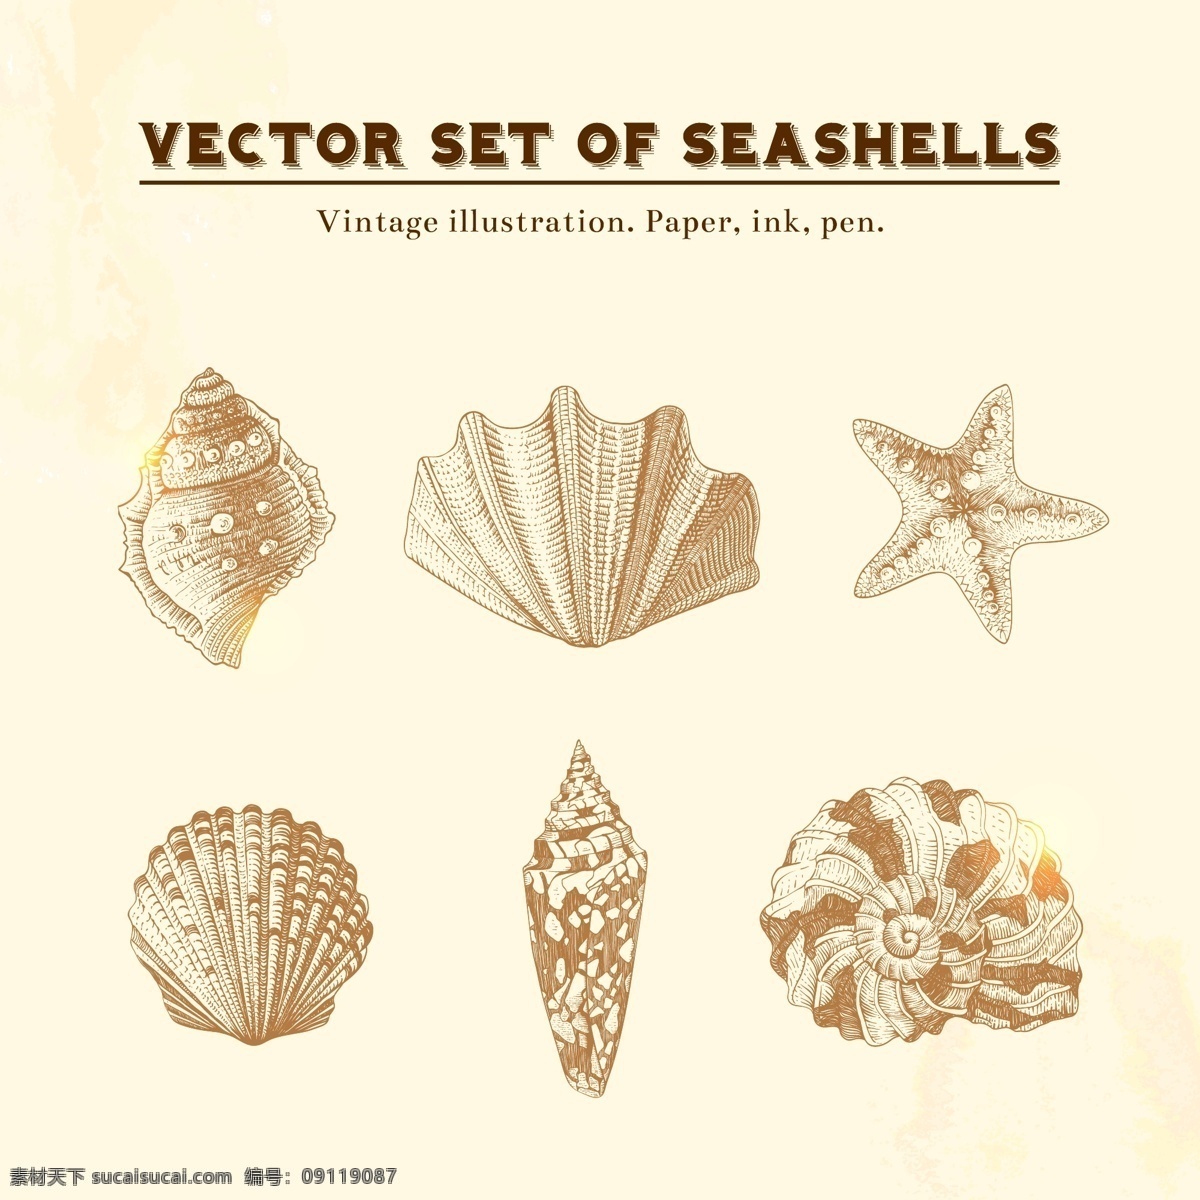 贝壳 矢量图 ai格式 大海 淡黄色背景 海贝 海螺 海星 沙滩 其他矢量图